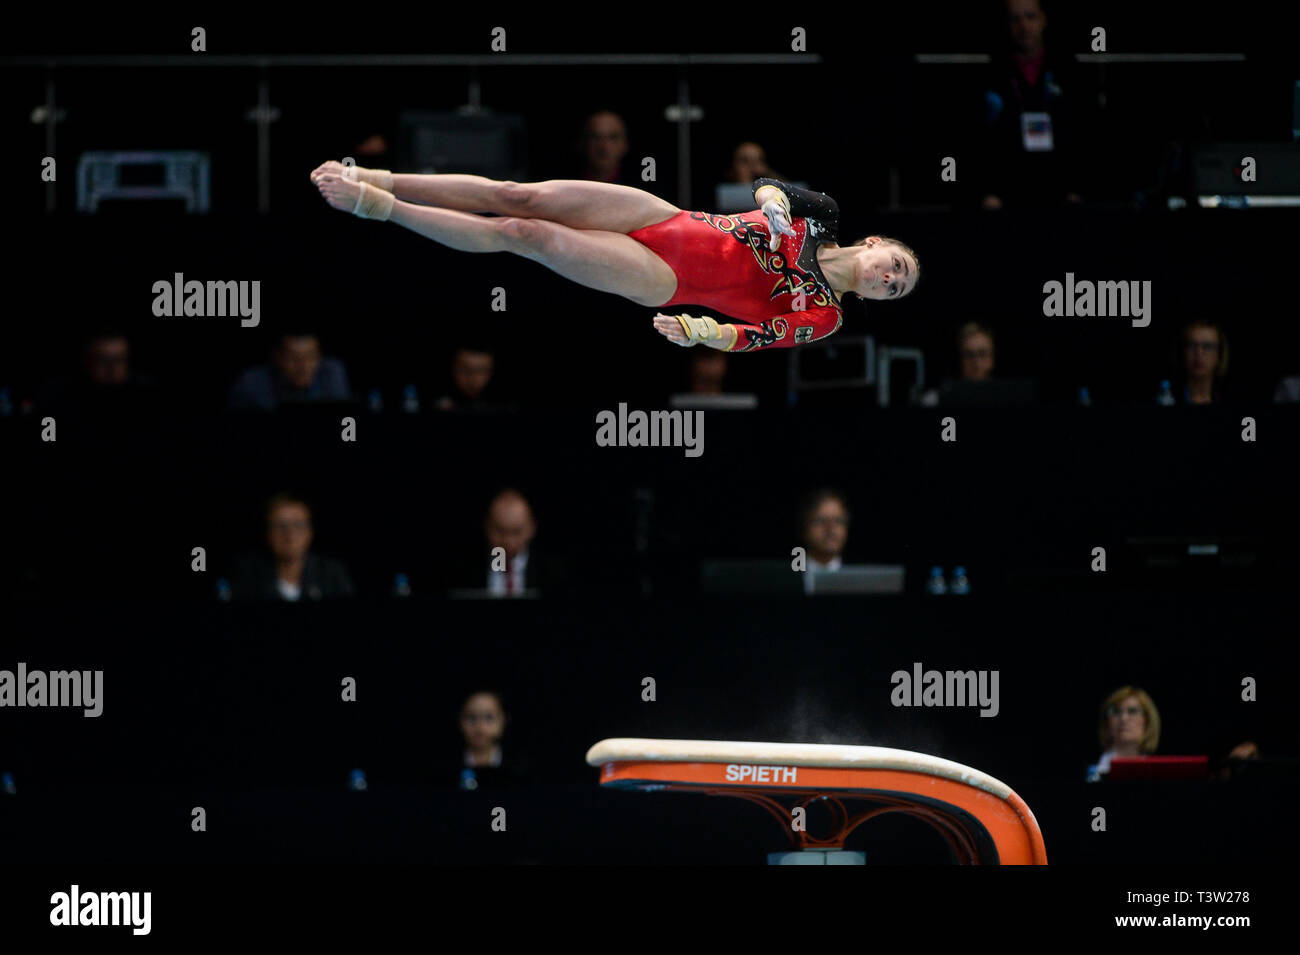 Lisa Zimmermann de Allemagne vu en action au cours de la qualification des femmes du 8ème Championnat d'Europe en gymnastique artistique (jour 2). Banque D'Images